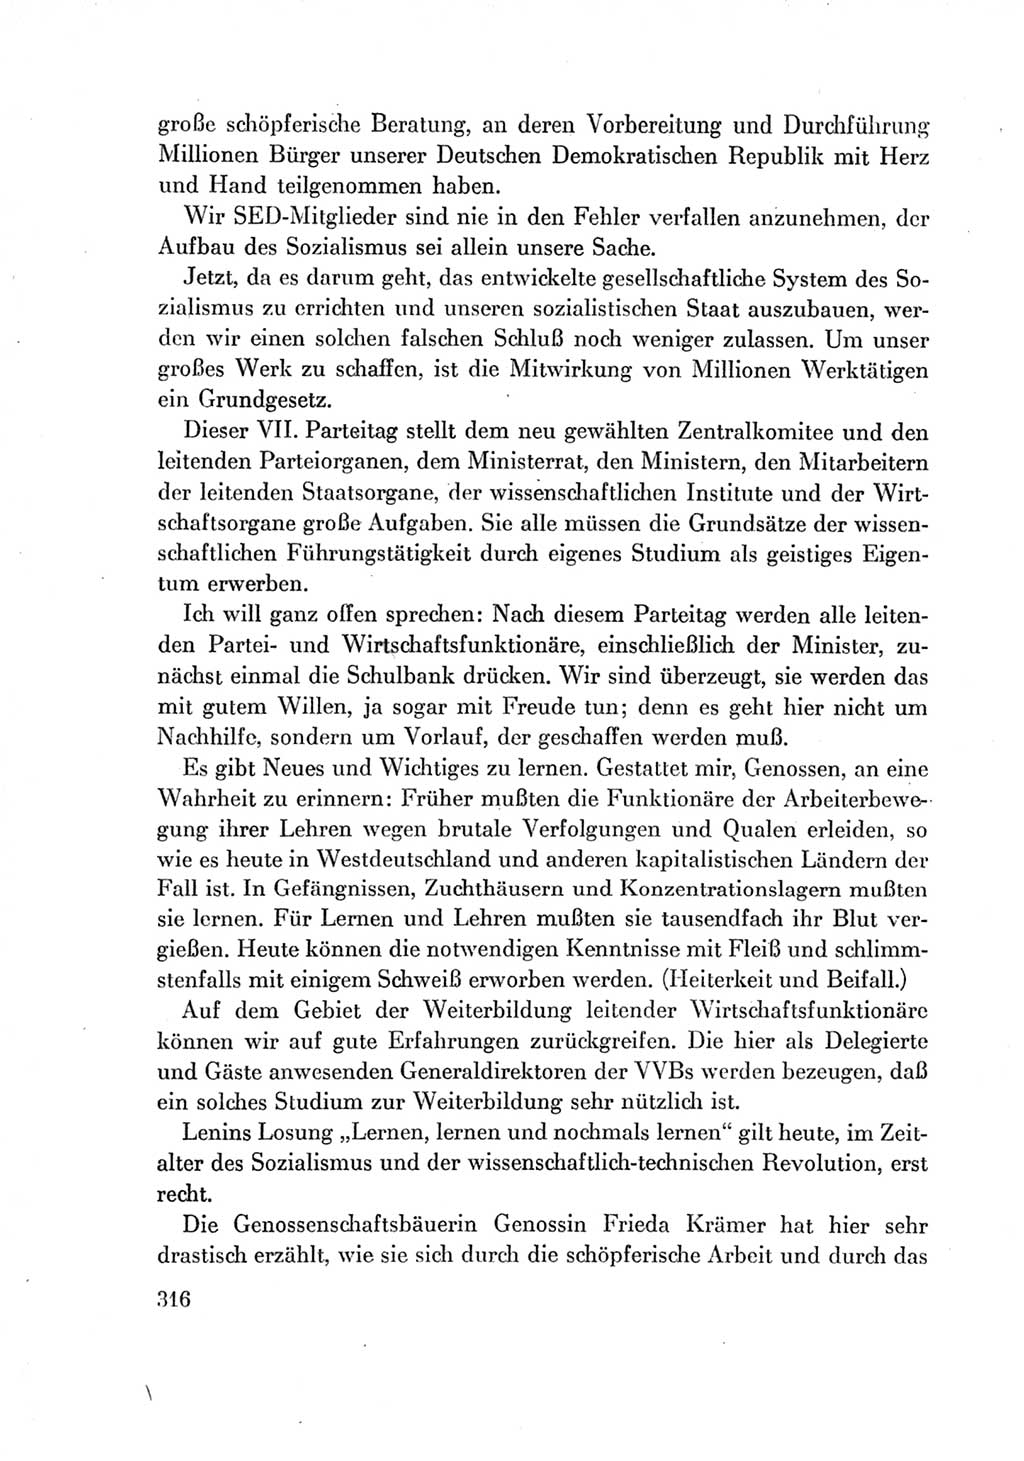 Protokoll der Verhandlungen des Ⅶ. Parteitages der Sozialistischen Einheitspartei Deutschlands (SED) [Deutsche Demokratische Republik (DDR)] 1967, Band Ⅱ, Seite 316 (Prot. Verh. Ⅶ. PT SED DDR 1967, Bd. Ⅱ, S. 316)